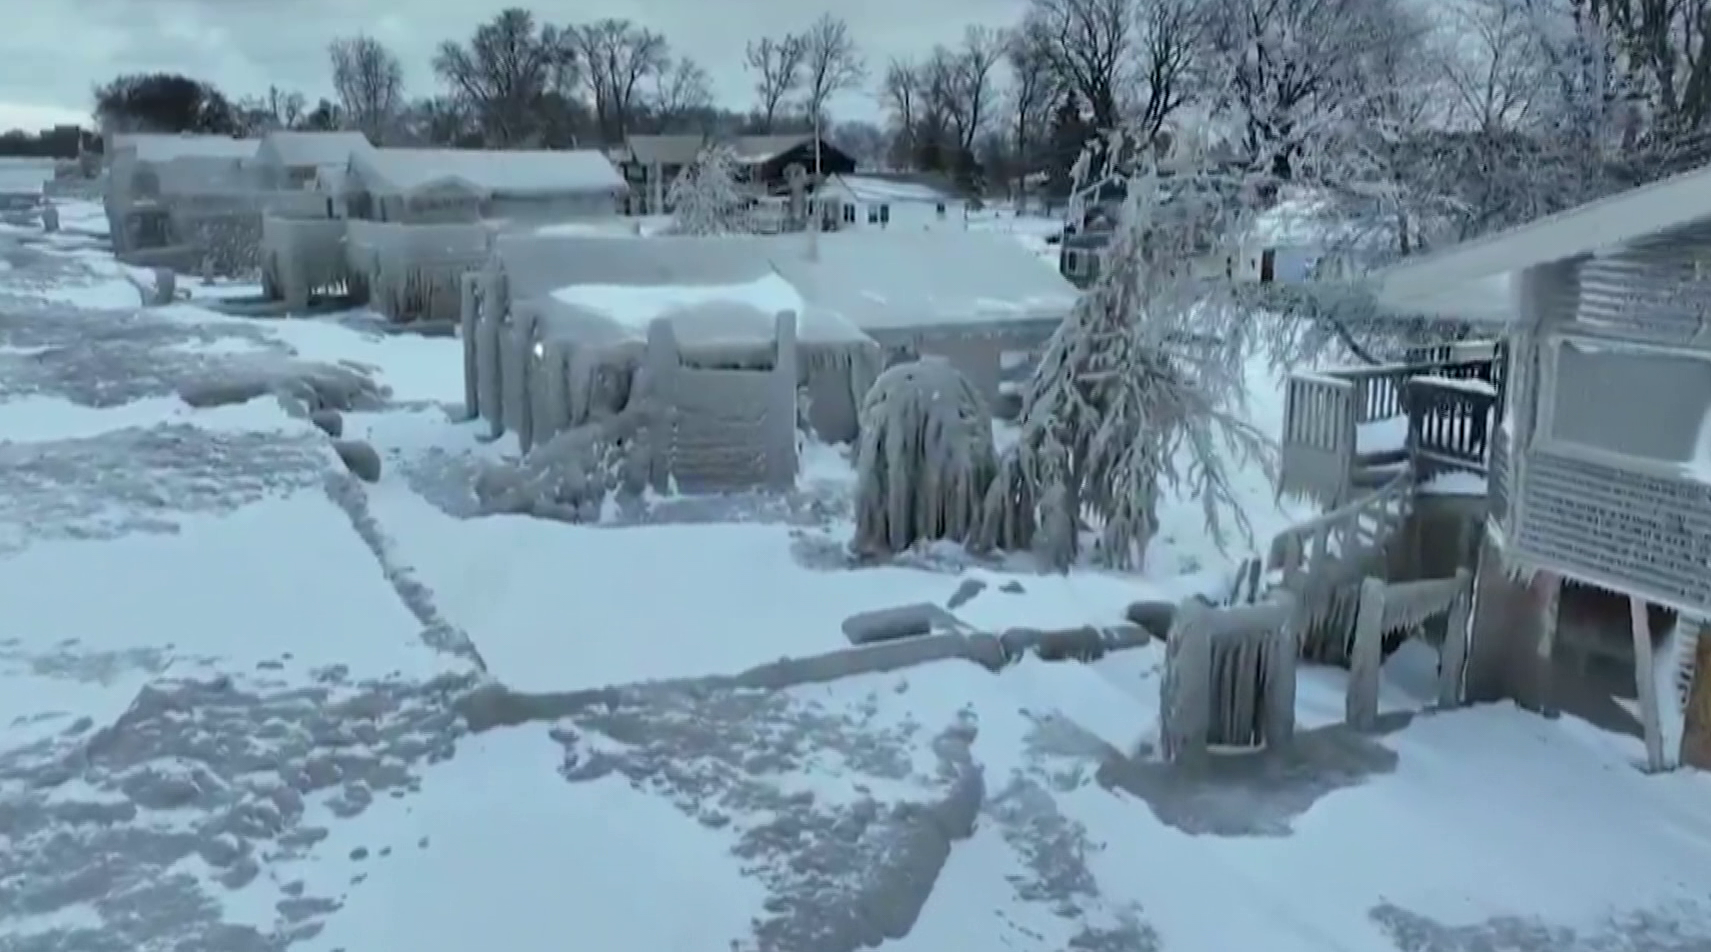 Legkevesebb 46 ember halt meg a téli időjárás miatt Észak-Amerikában